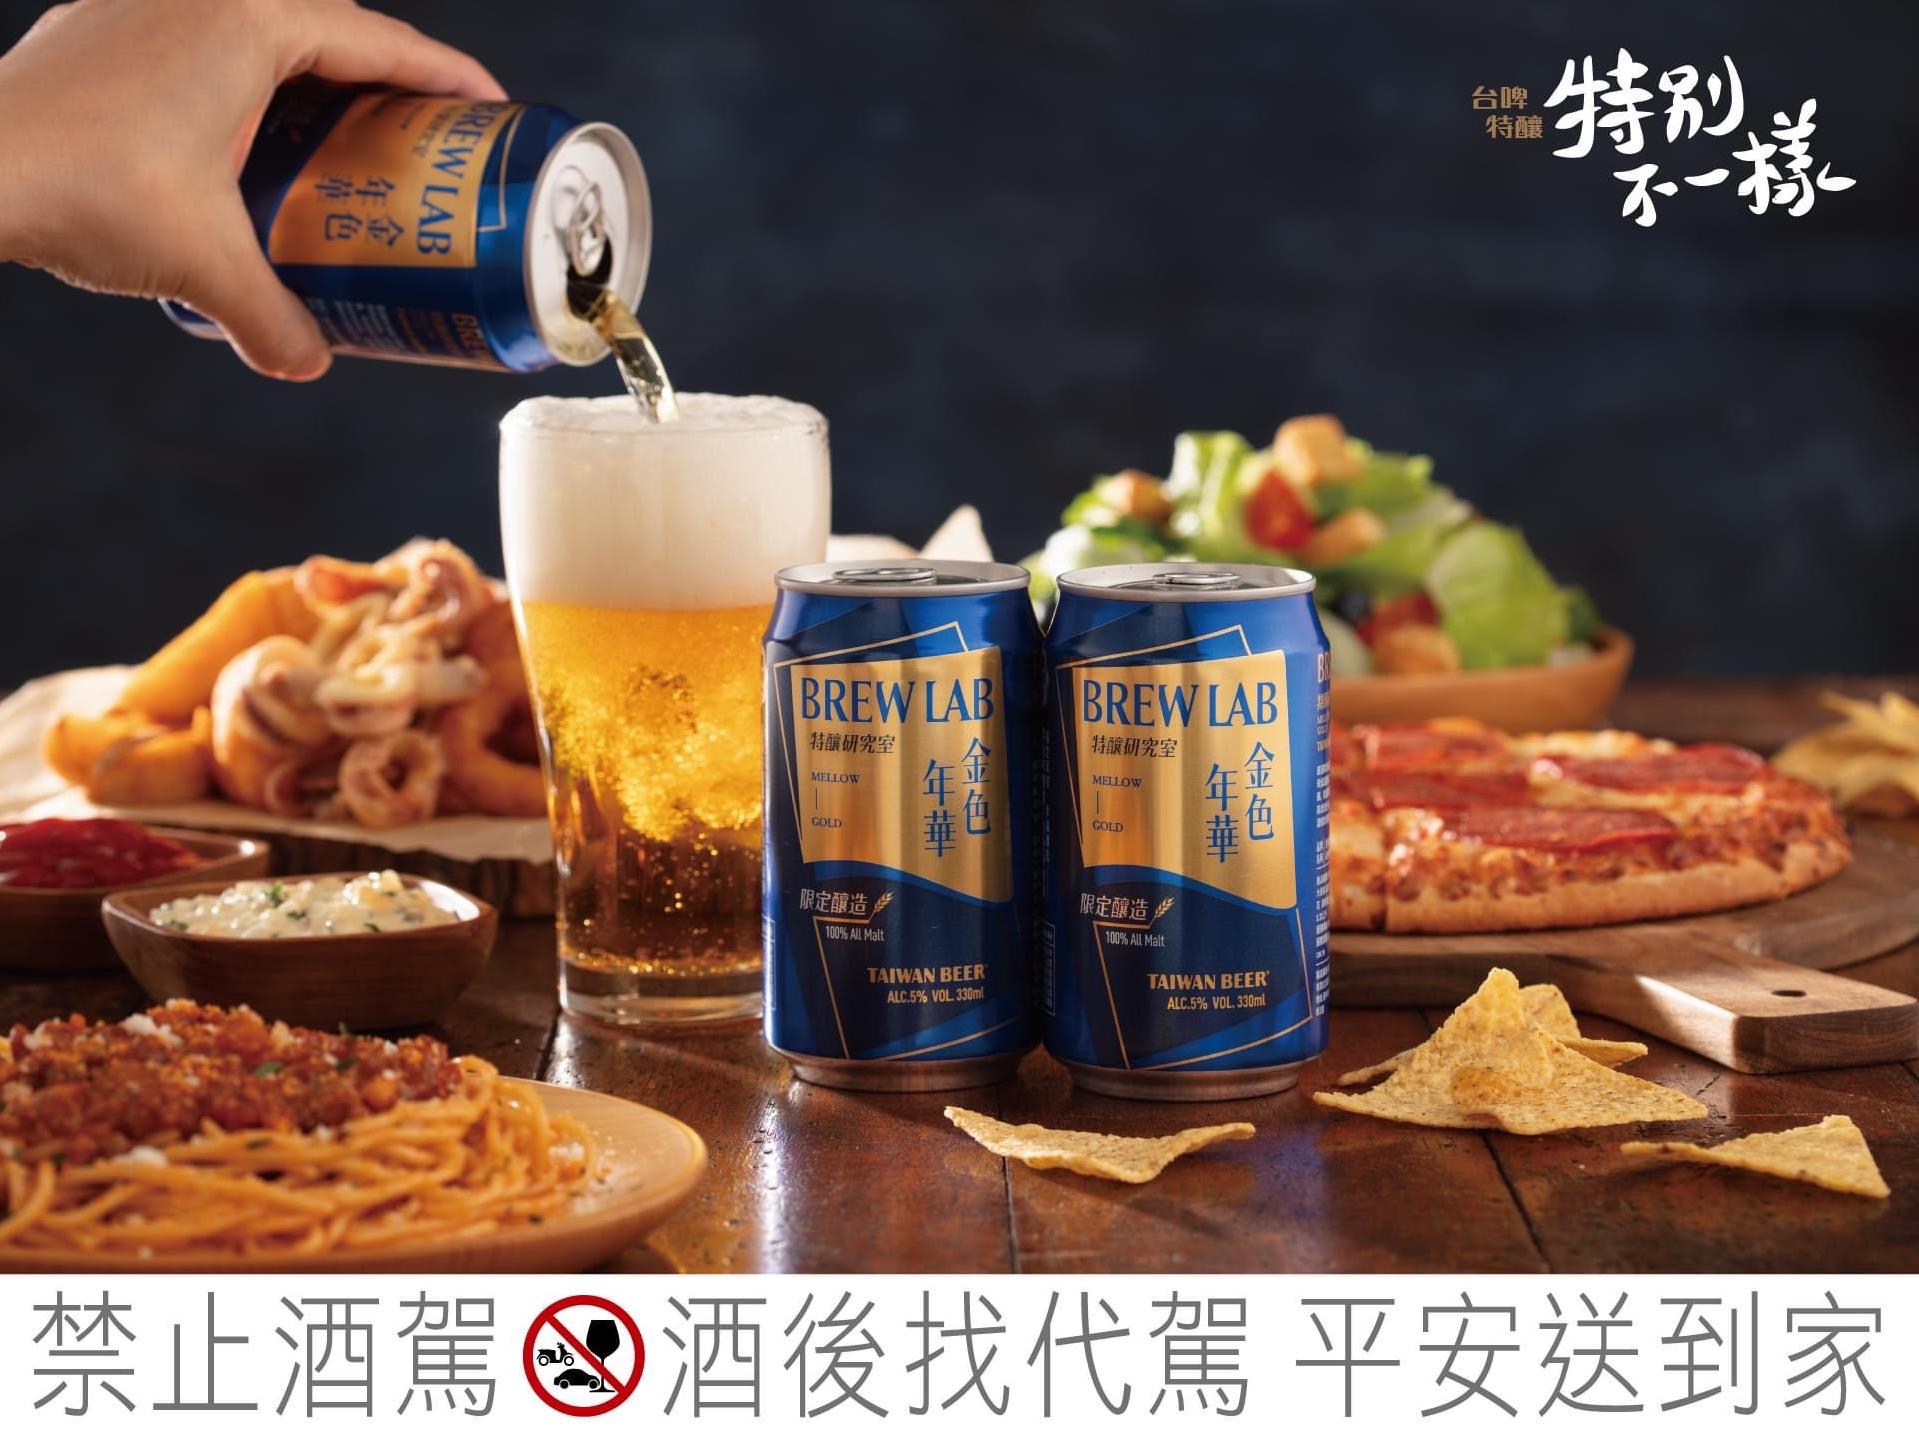 【美食】#金色年華 精選慕尼黑麥芽及歐系啤酒花｜ 世華國際酒公司